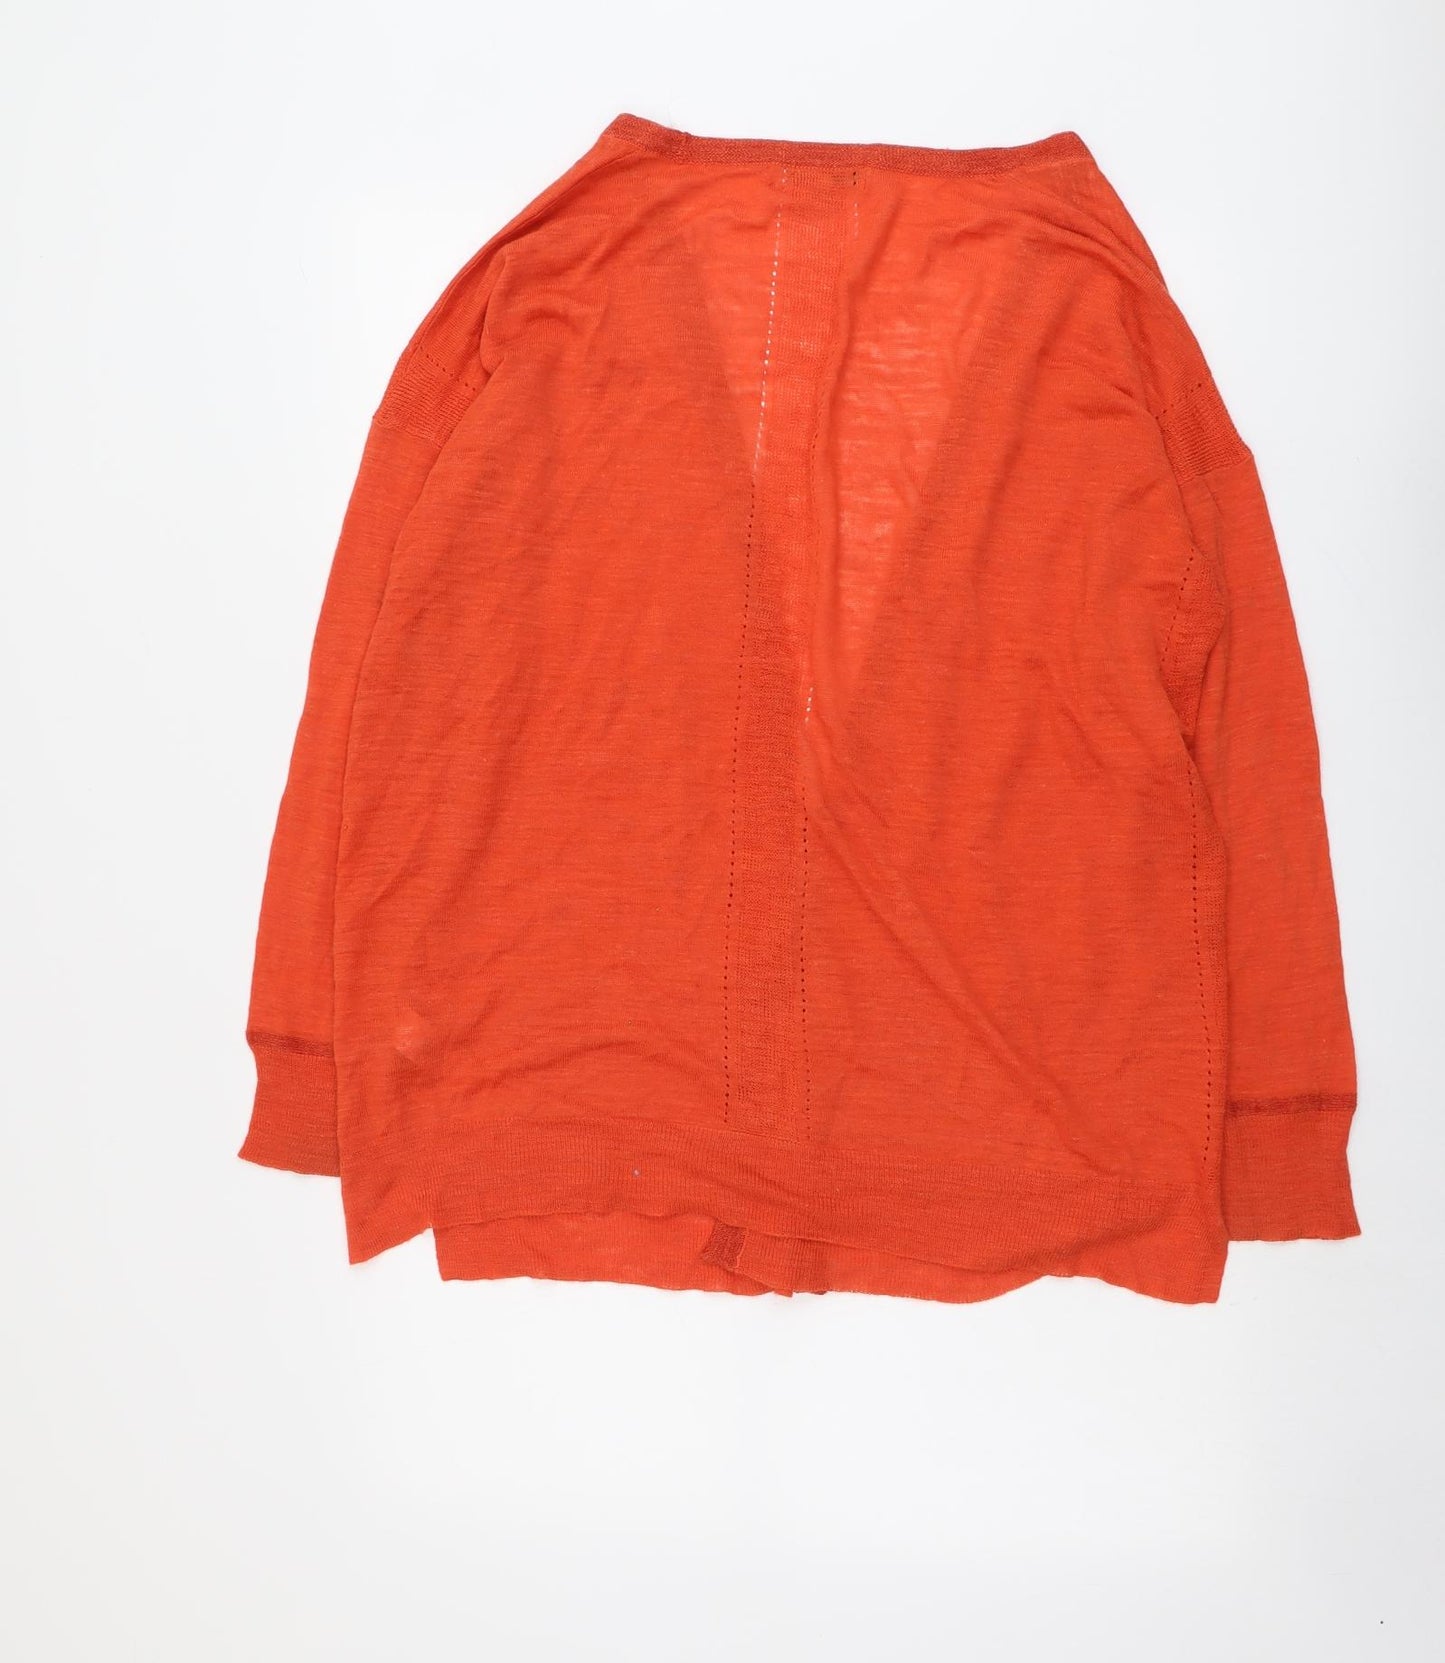 NEXT Womens Orange V-Neck Acrylic Cardigan Jumper Size 14